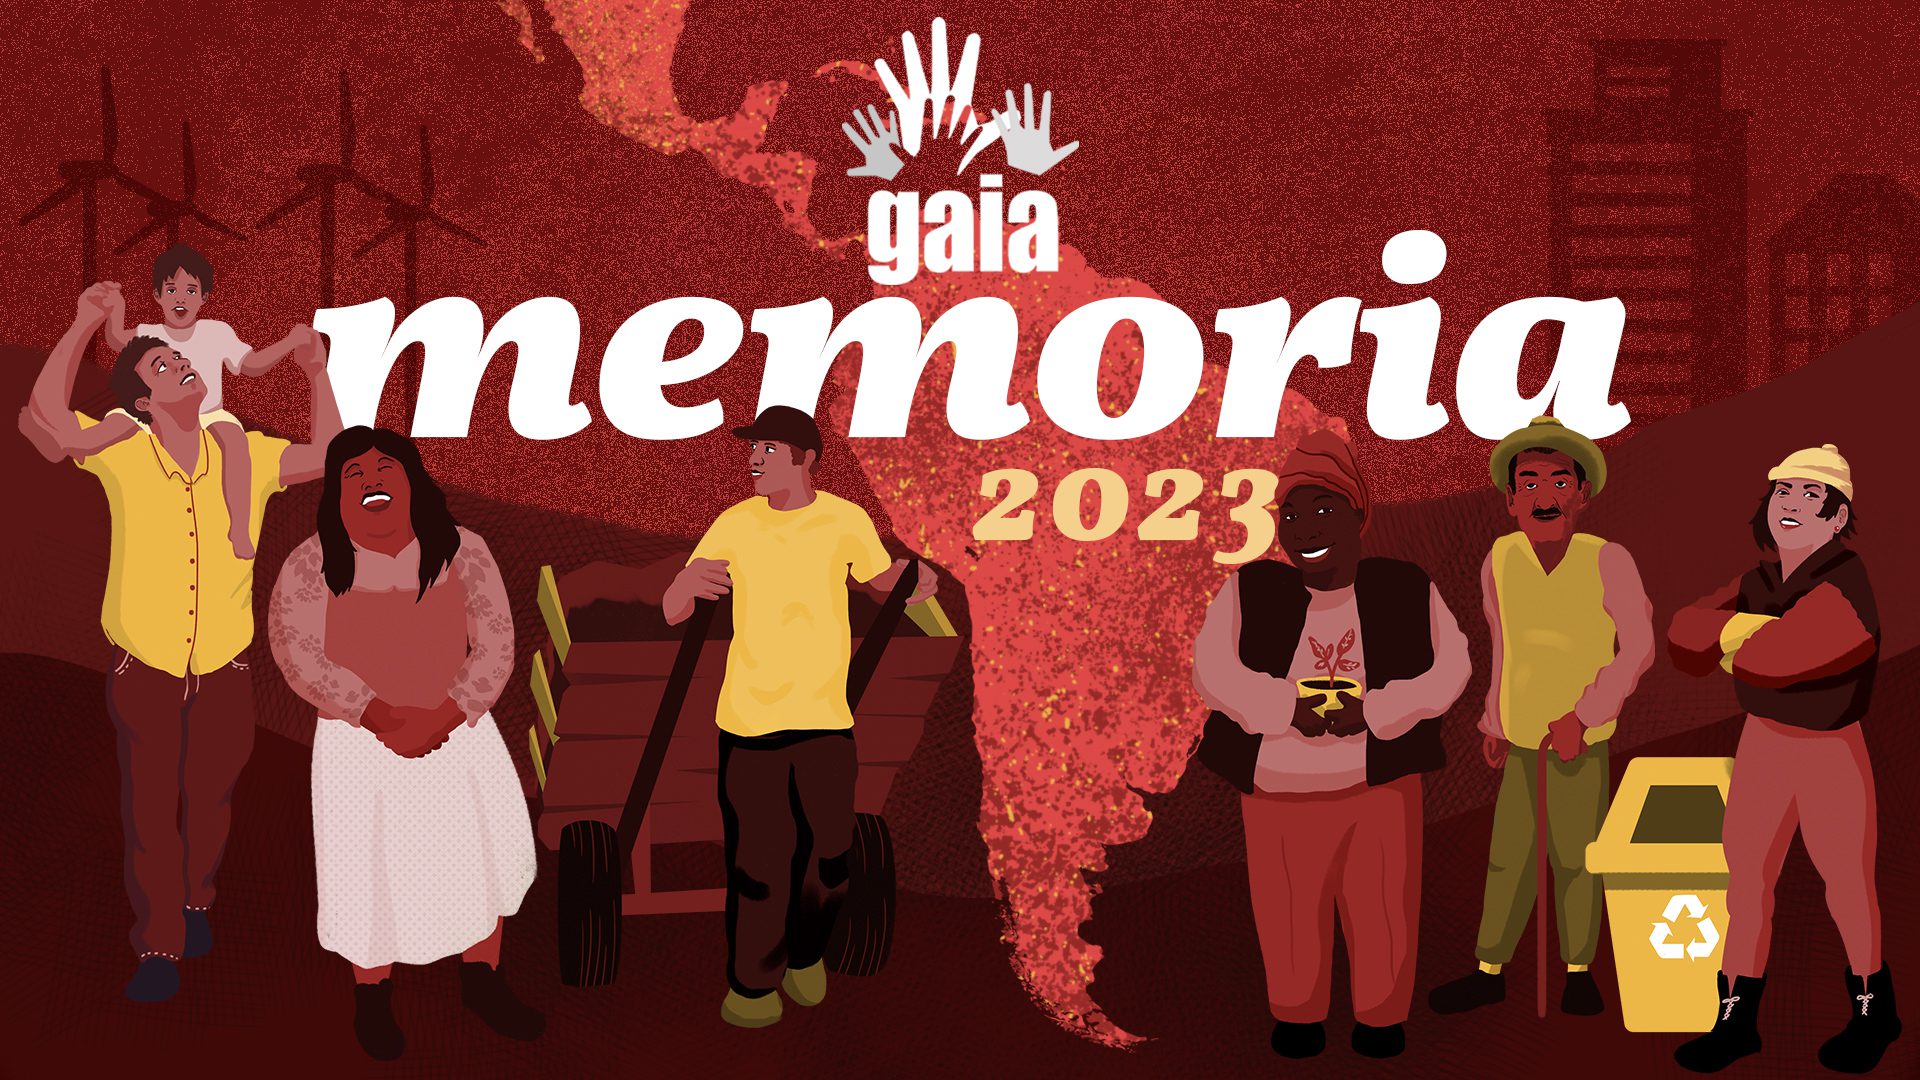 Portada memoria GAIA 2023. Fond rouge avec une carte de l'Amérique Latine et 6 personnages illustrés qui représentent les membres de GAIA.